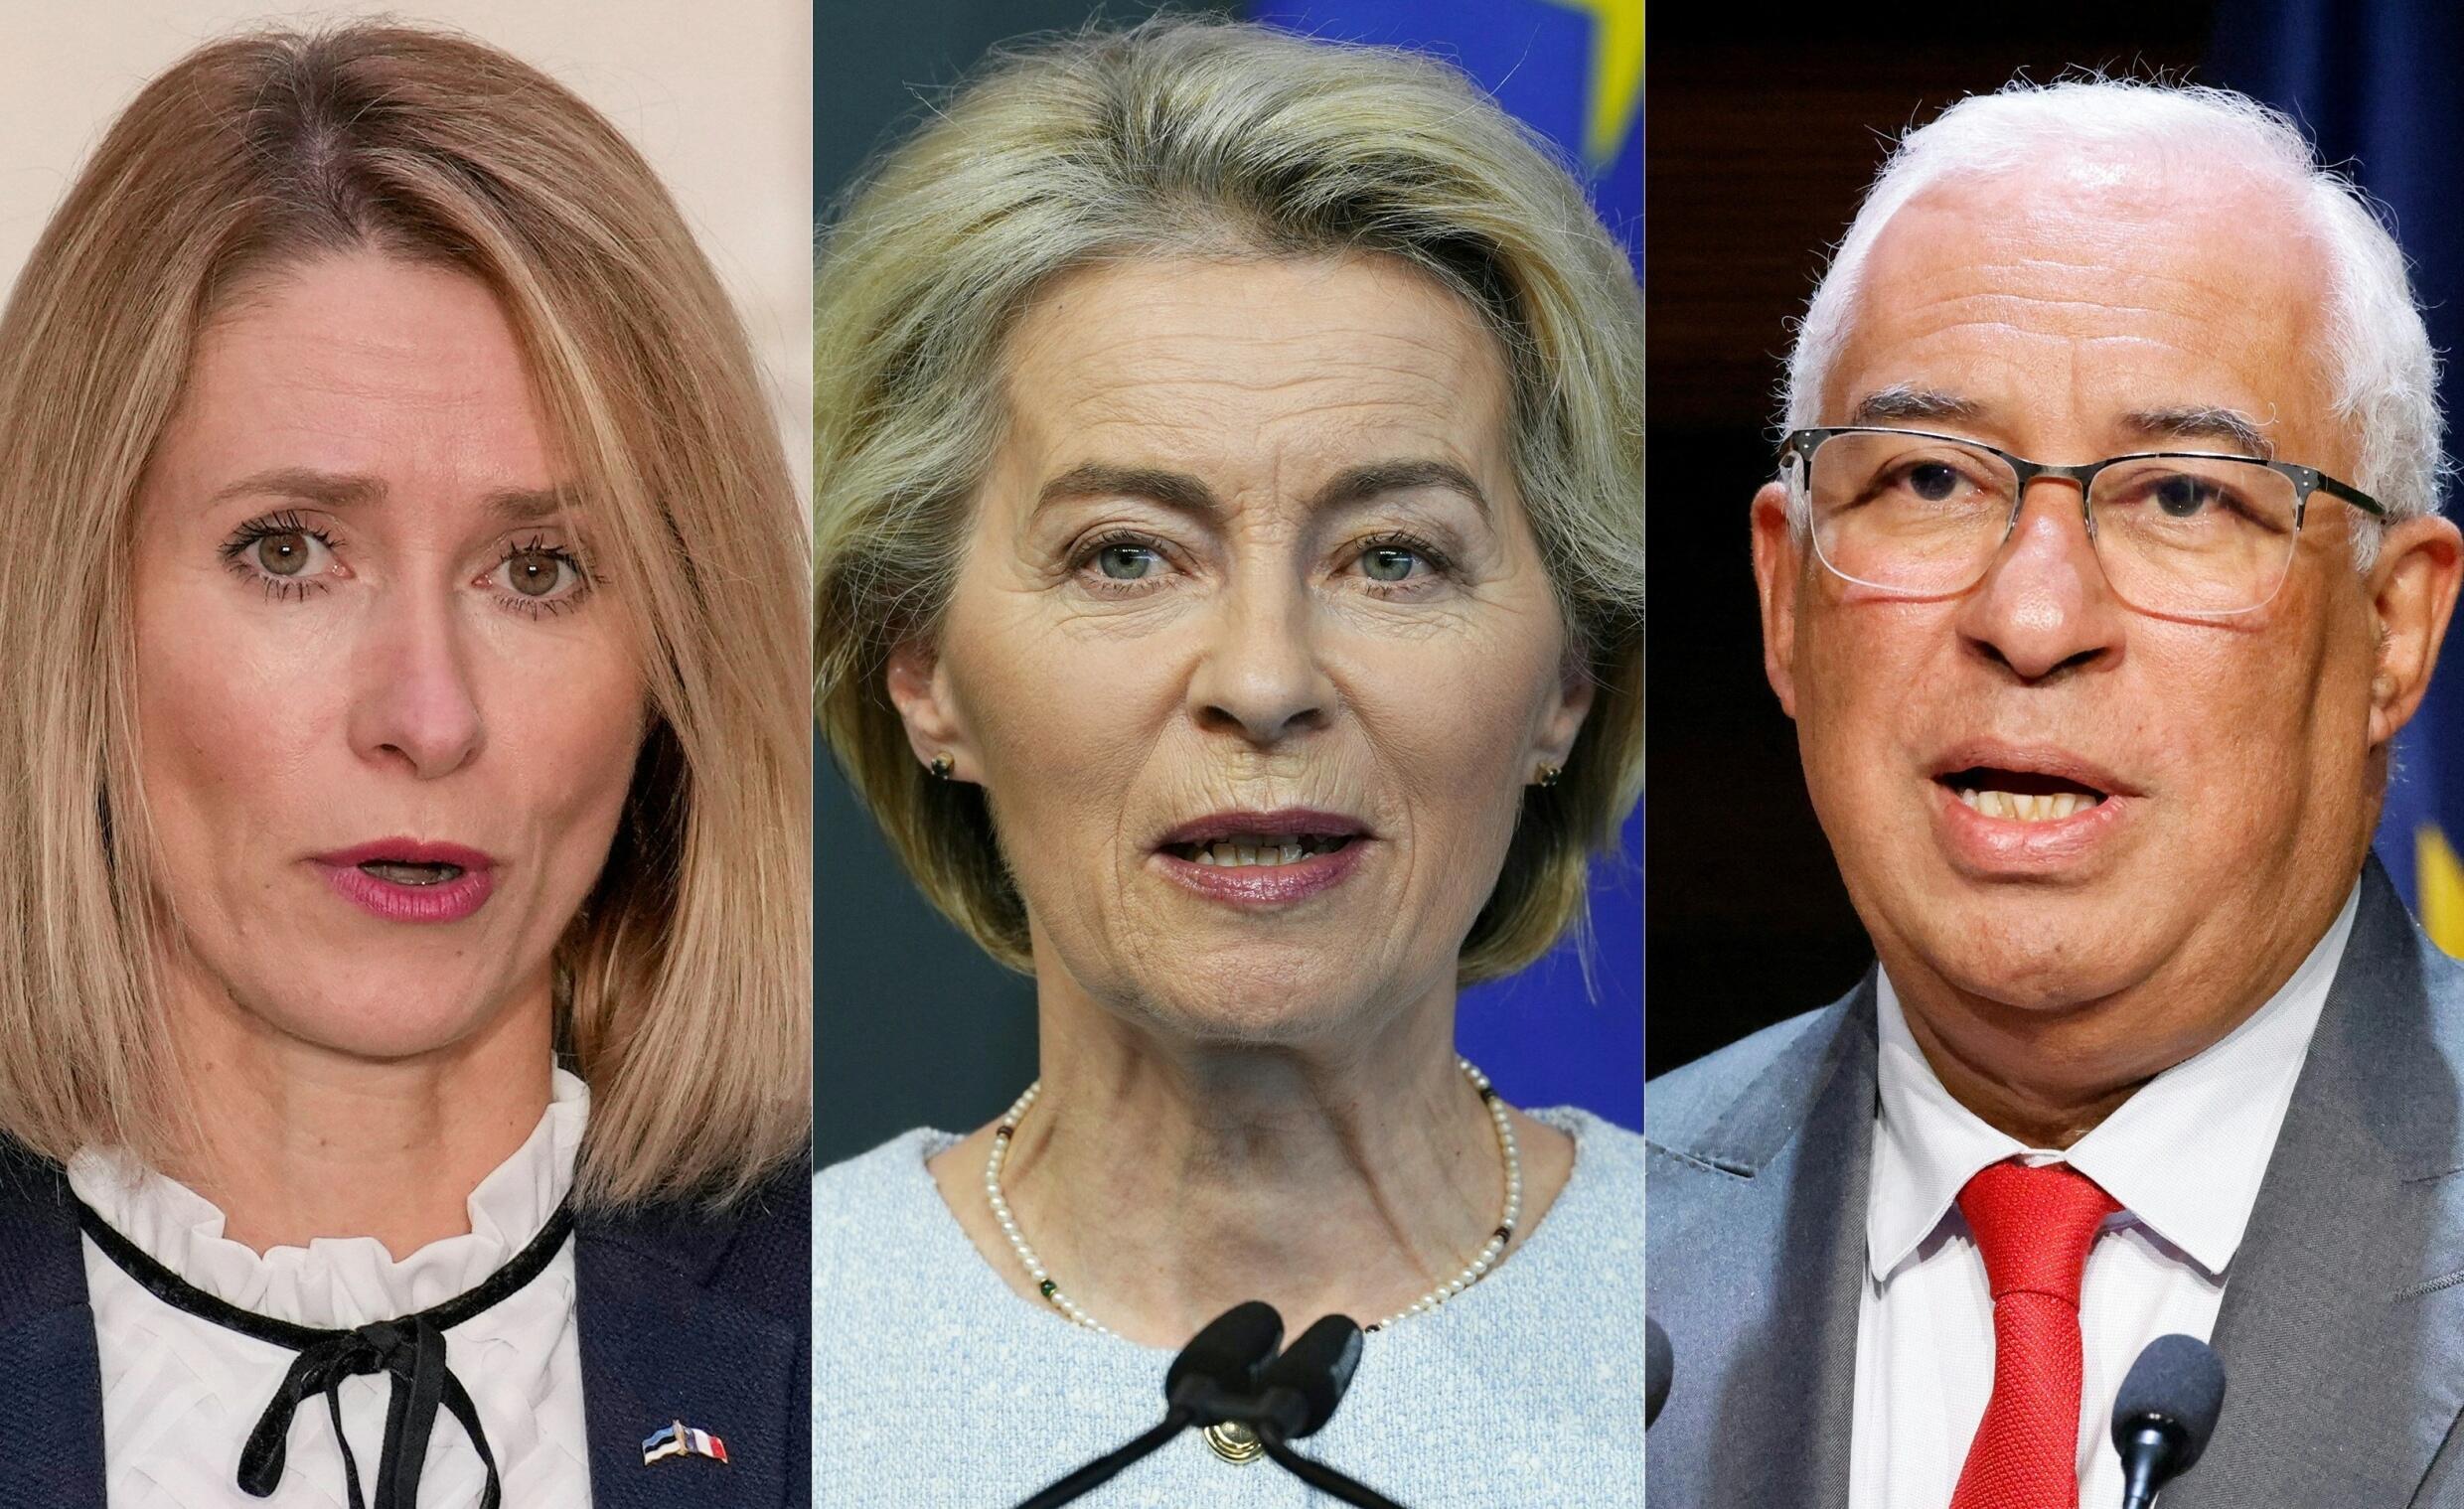 Von der Leyen, Costa and Kallas endorsed for the EU's top jobs